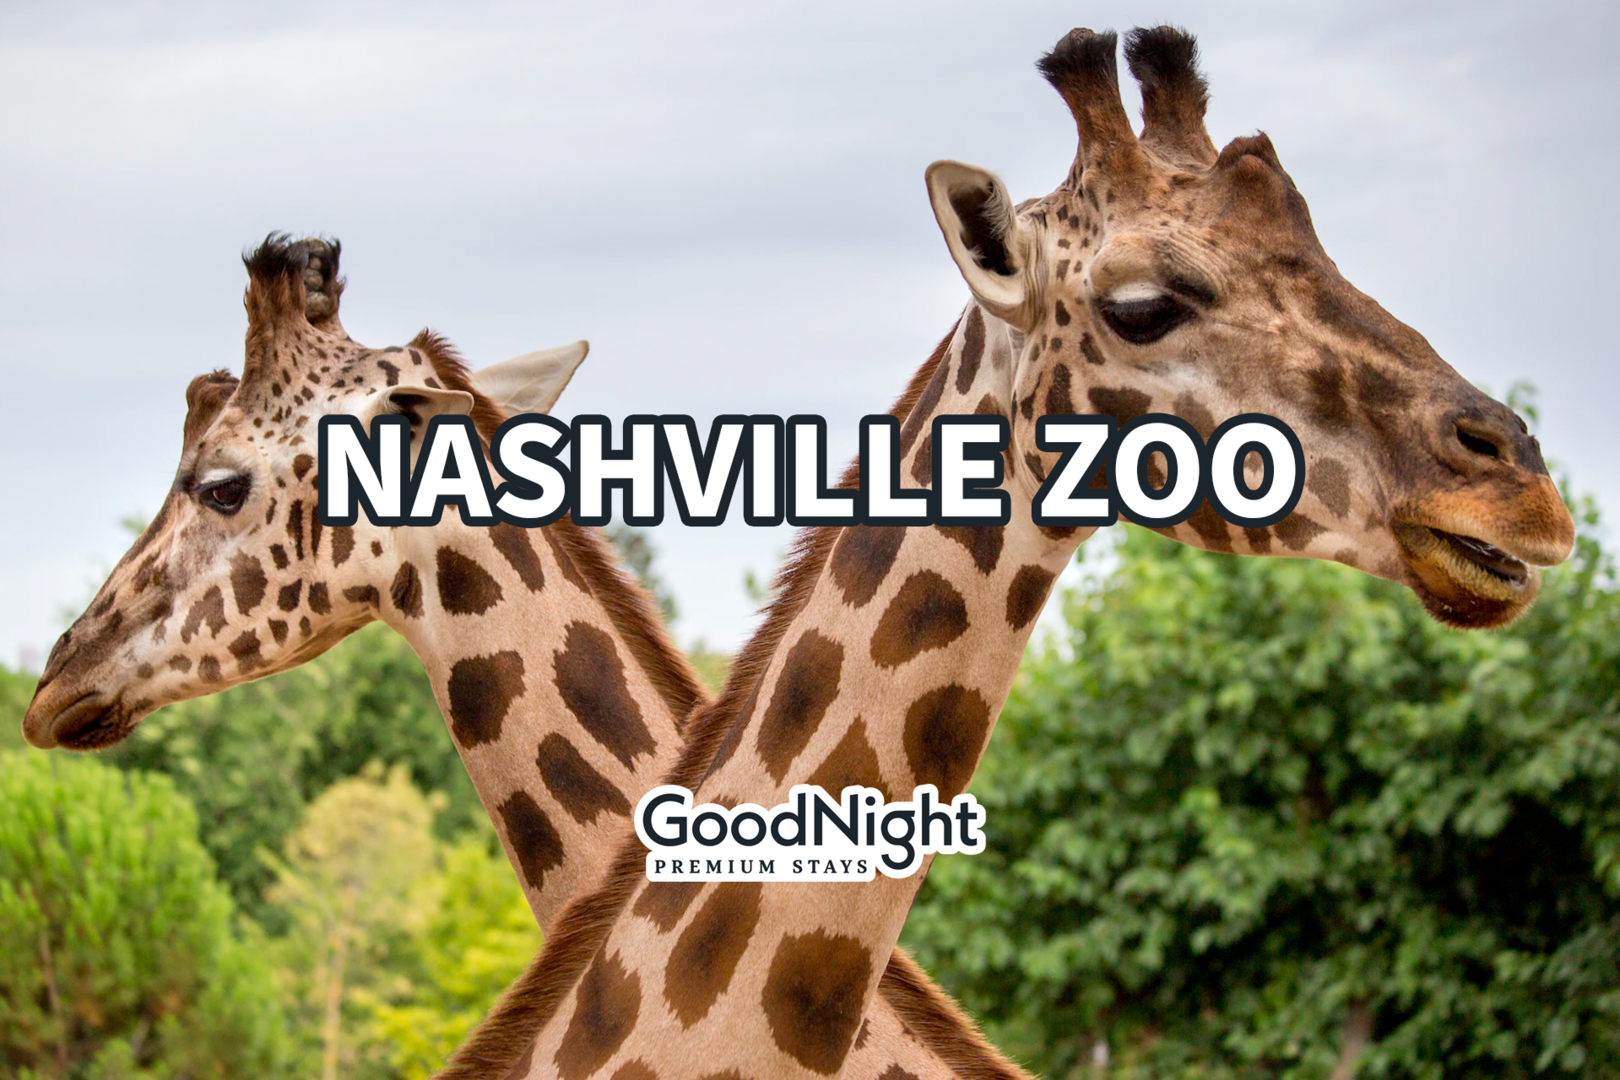 16 mins: Nashville Zoo